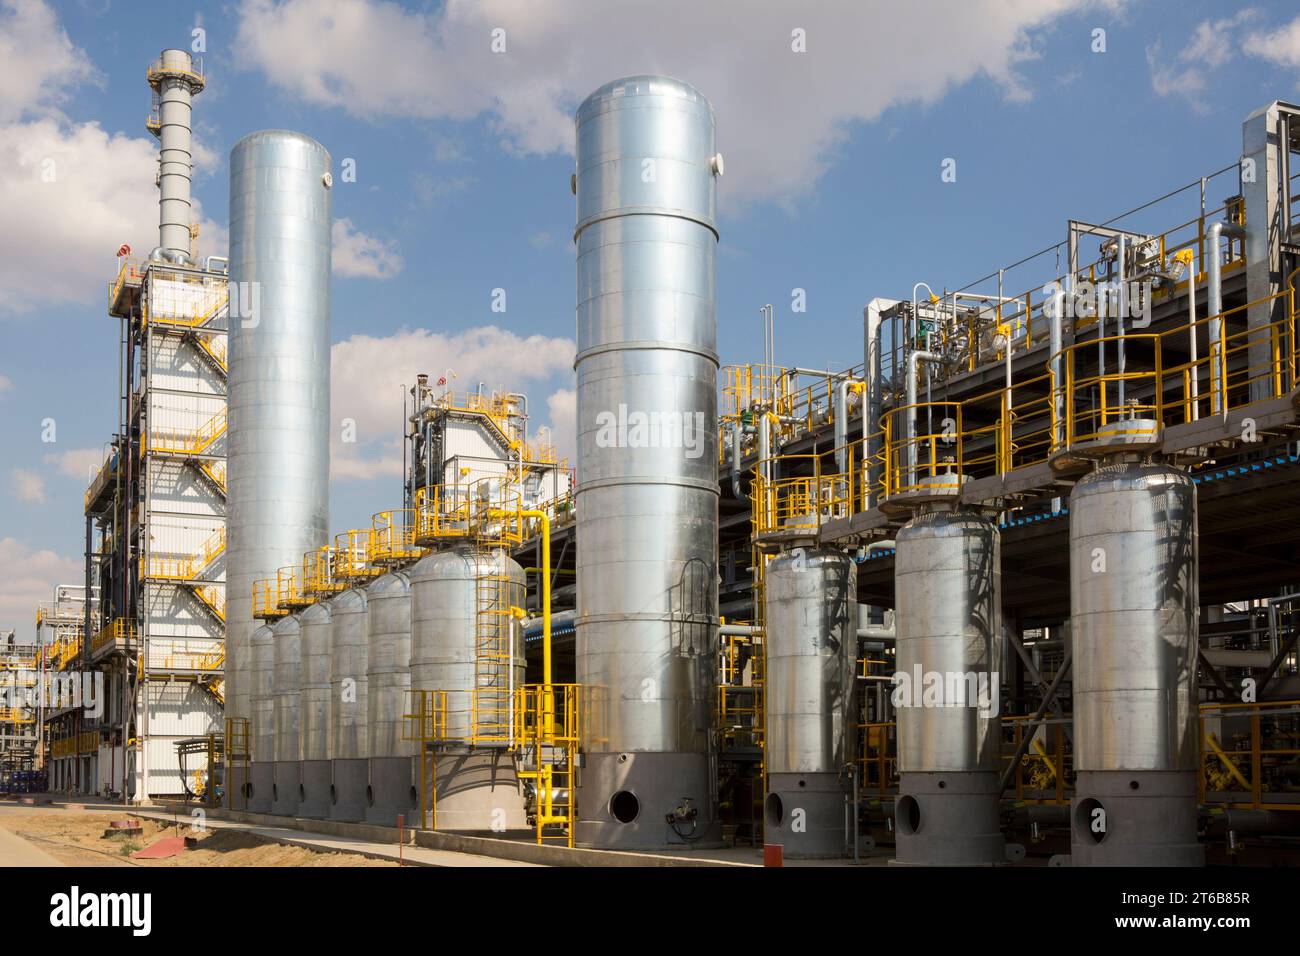 La vue de l'unité de production et de purification d'hydrogène de 16 000 Nm3/h à la raffinerie KazMunaiGaz (KMG) Atyrau dans l'ouest du Kazakhstan. Banque D'Images